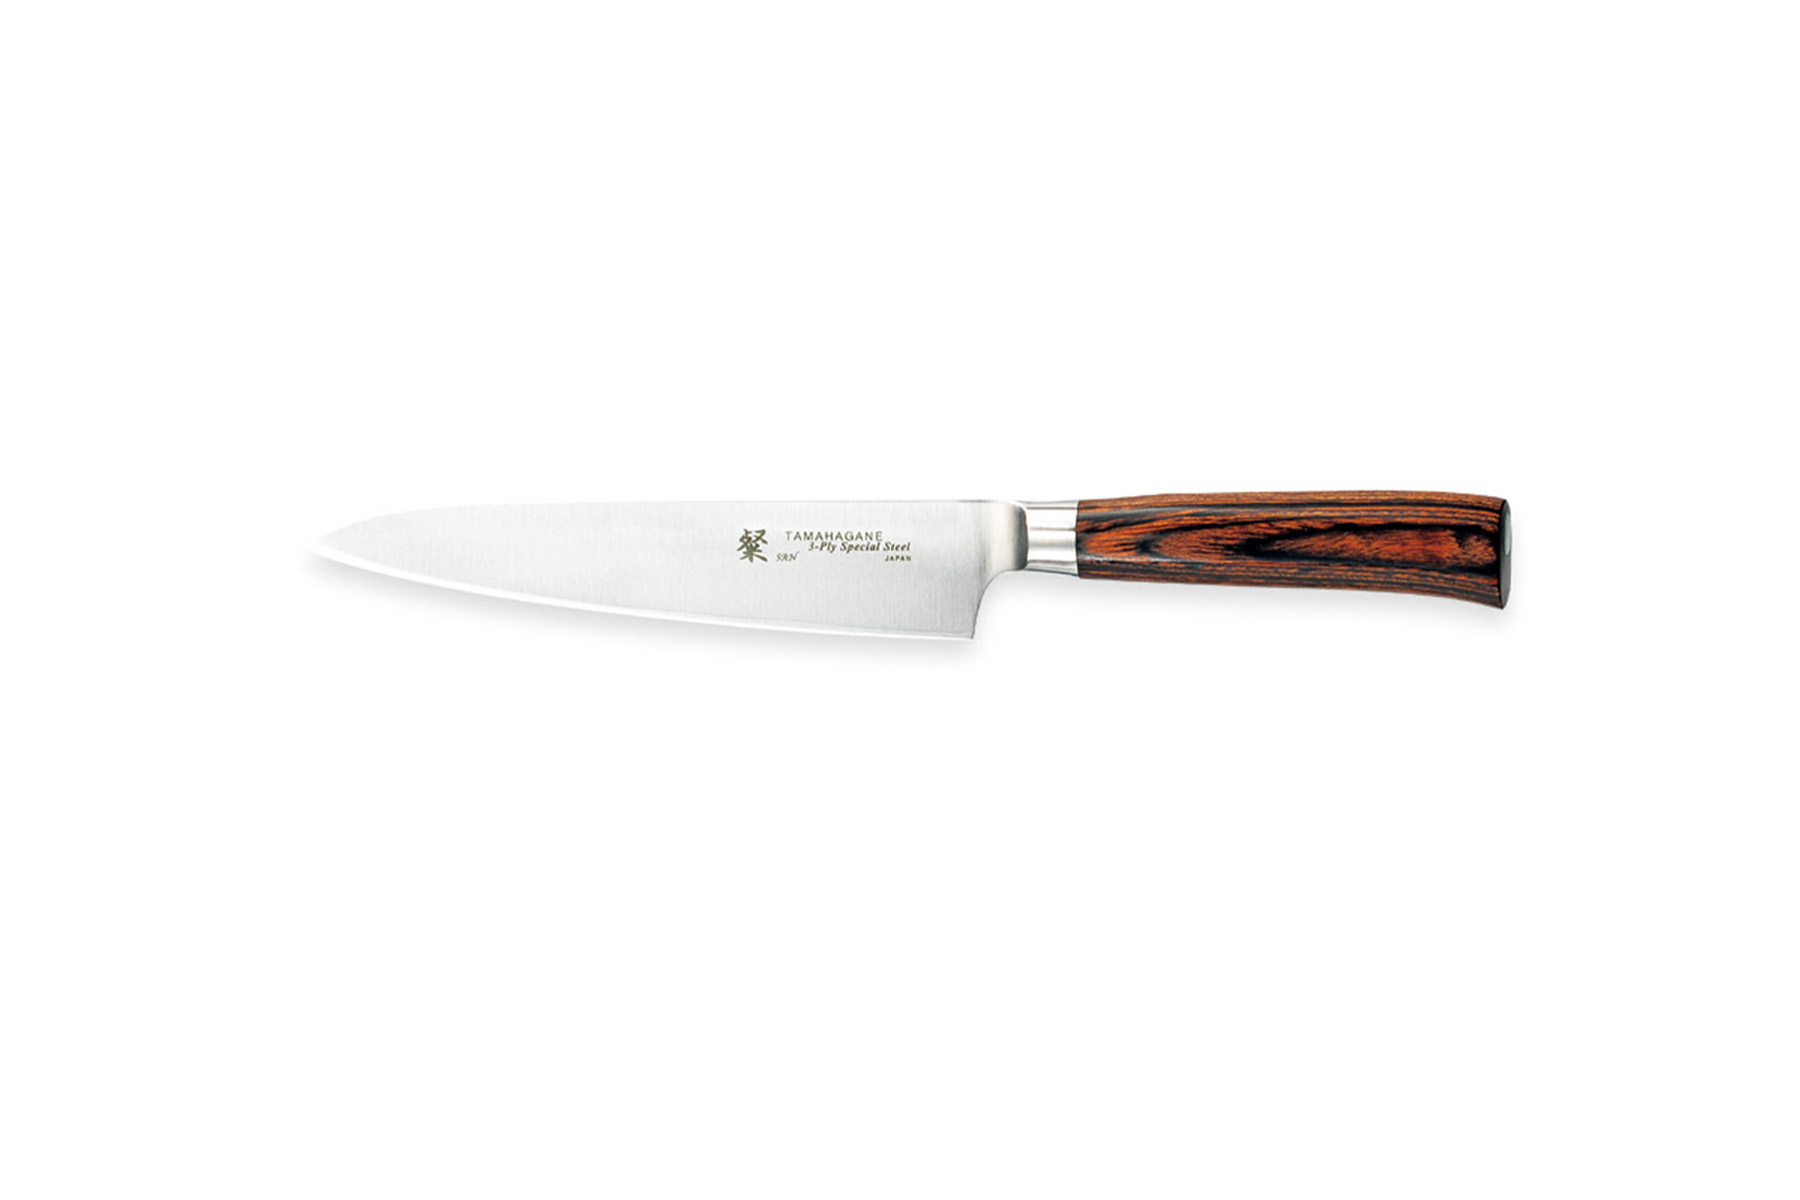 Couteau japonais Tamahagane San - Couteau petty 15 cm